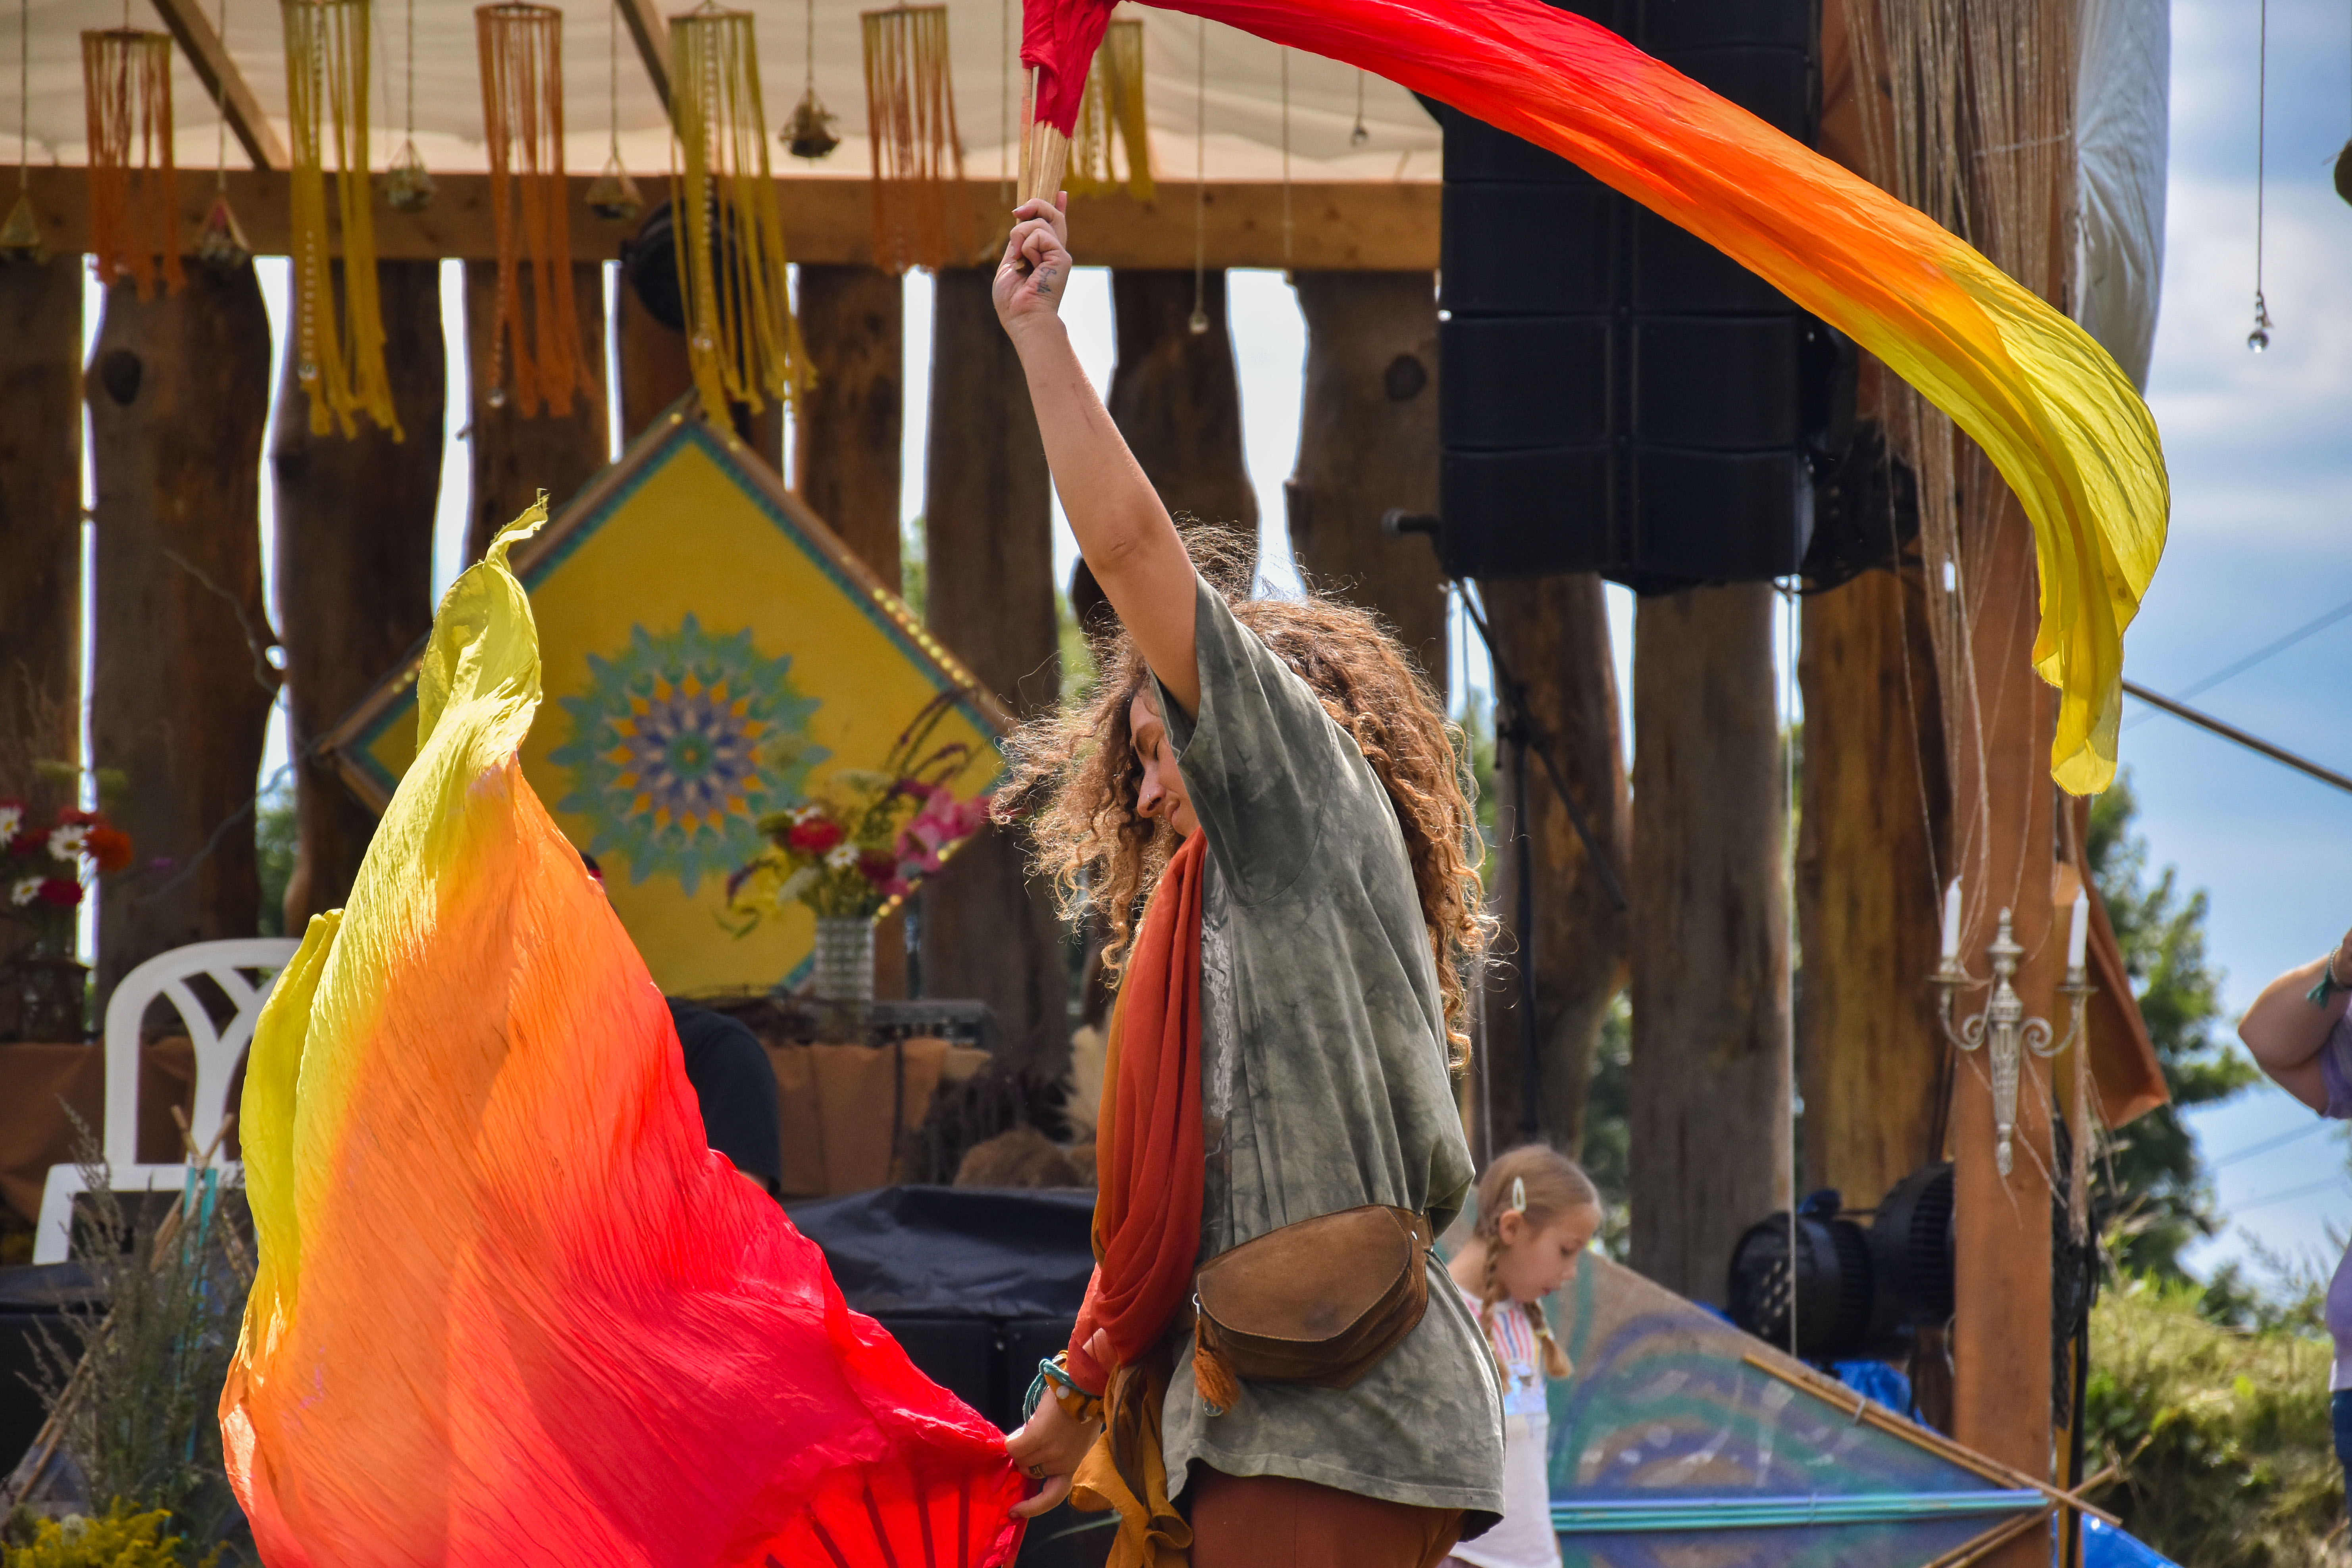 Une fille qui danse avec des évantails de tissus au son d'une musique entraînante diffusé par l'équipement de sonorisation événementiel devant une scène extérieure